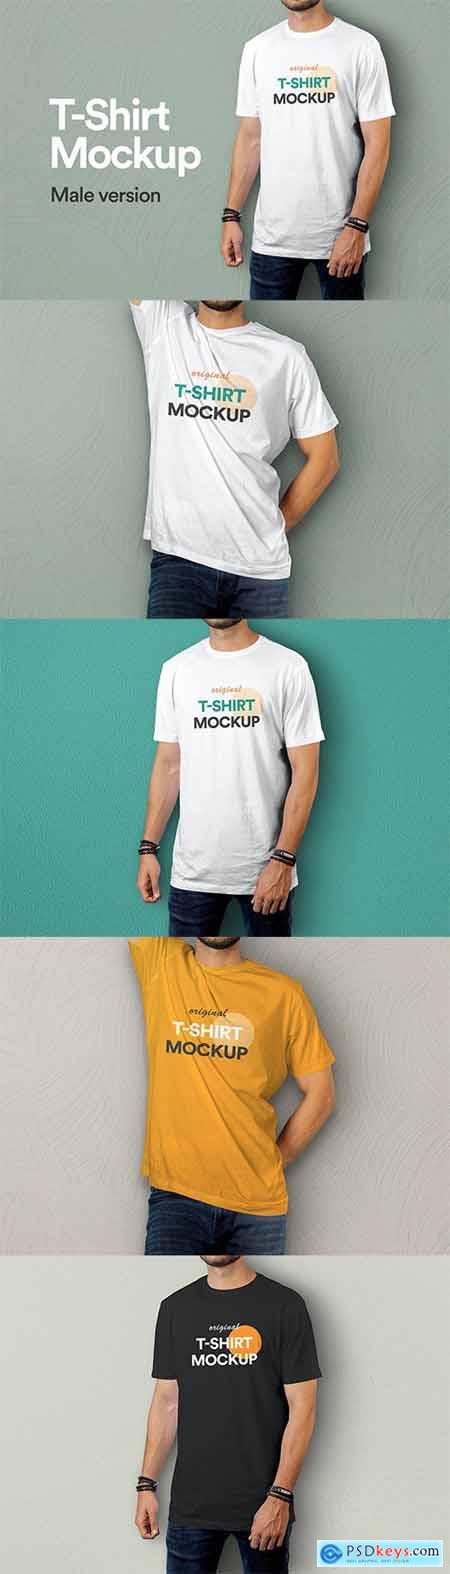 T-Shirt Mockup Vol 09